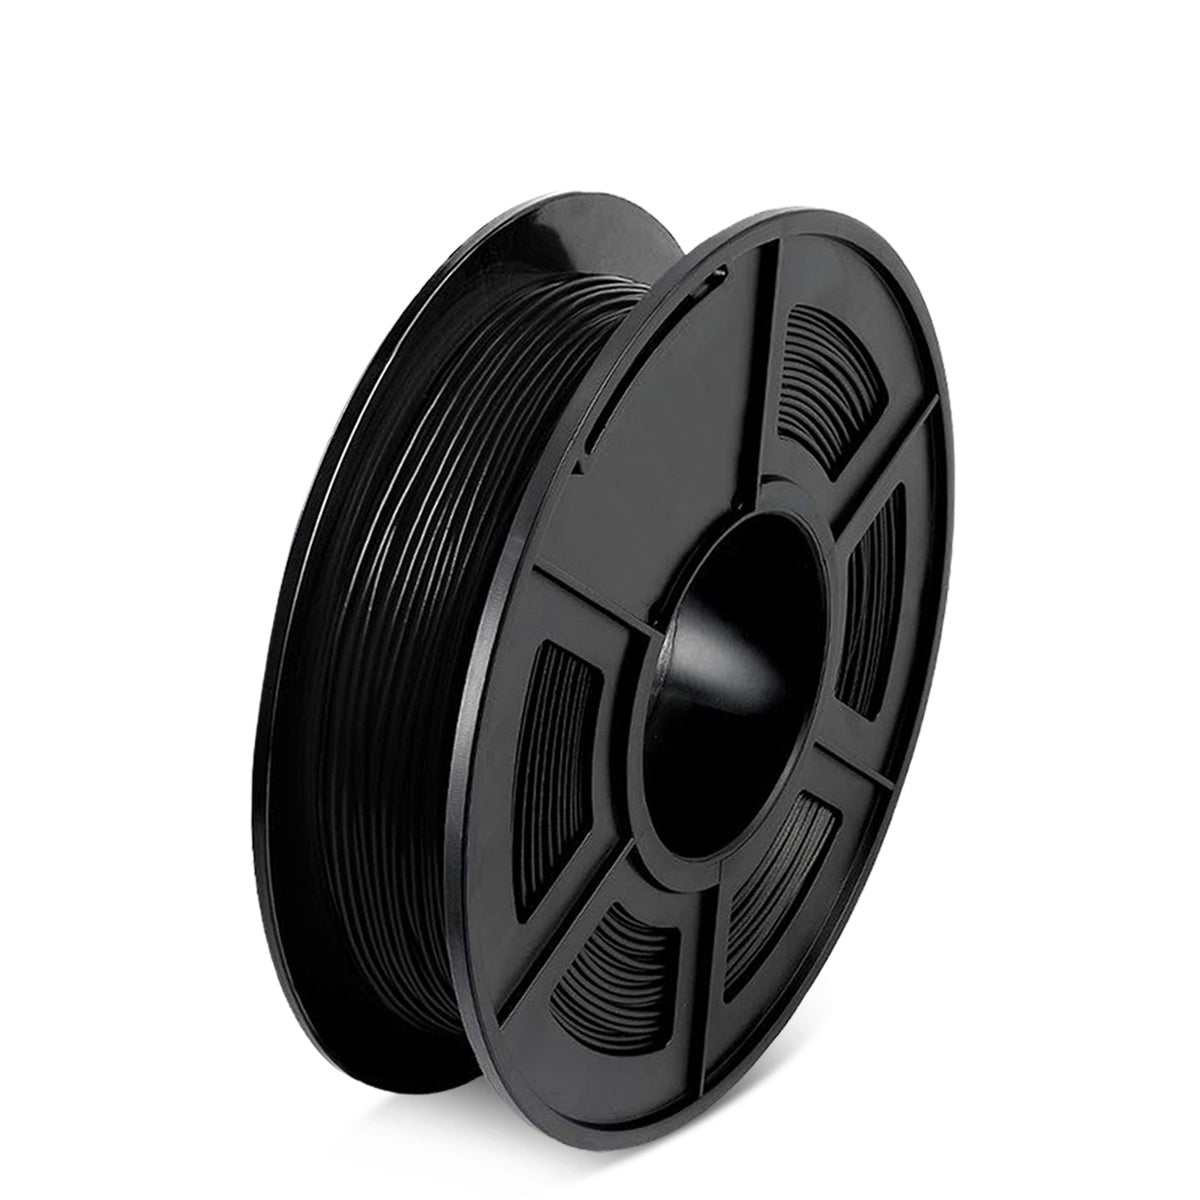 SUNLU ABS 3D Filament - 1.75mm